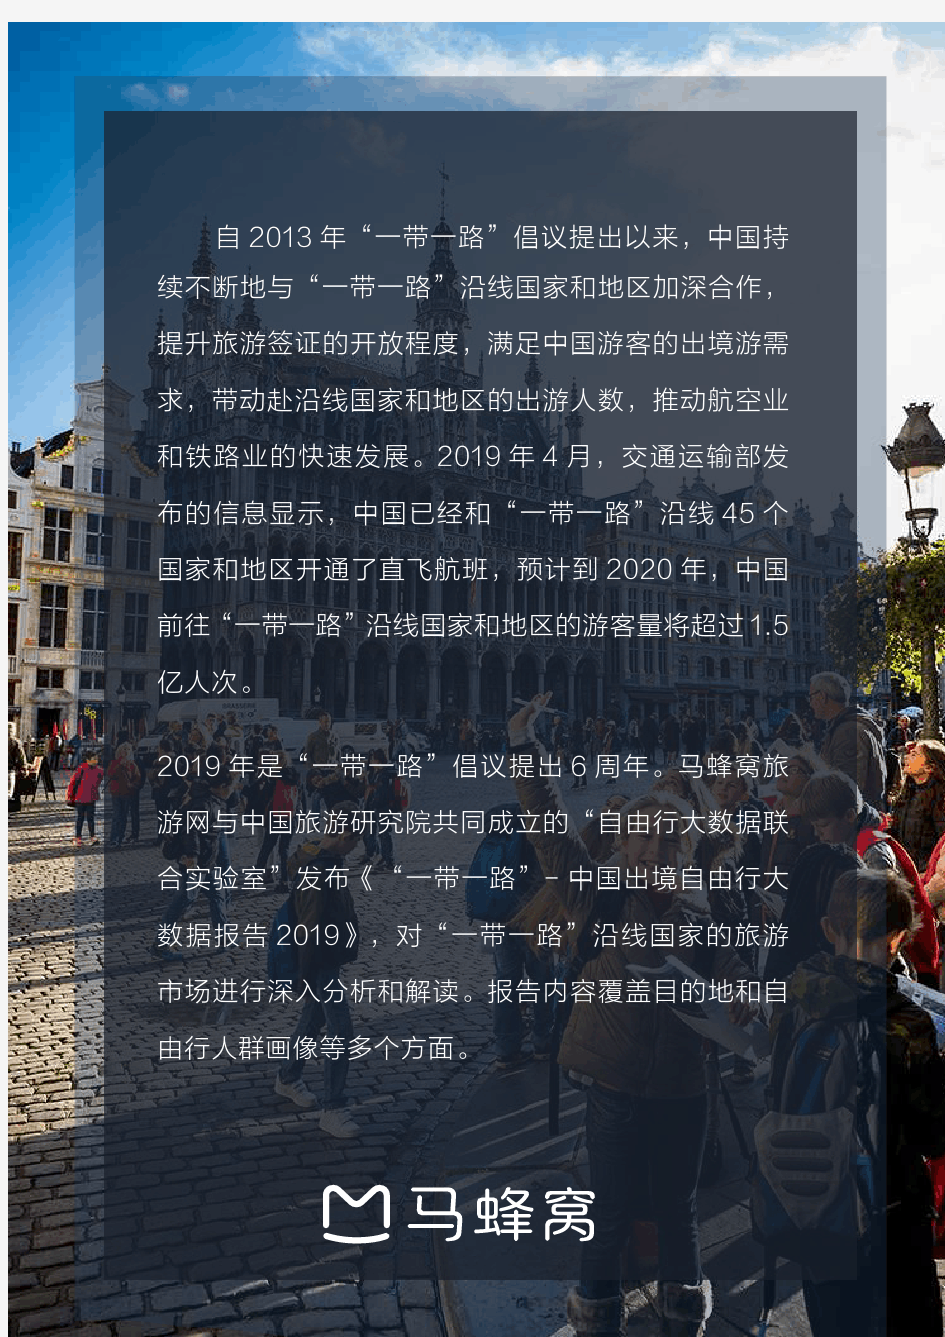 2019中国出境自由行大数据报告(旅游)-马蜂窝-2019.7-55页